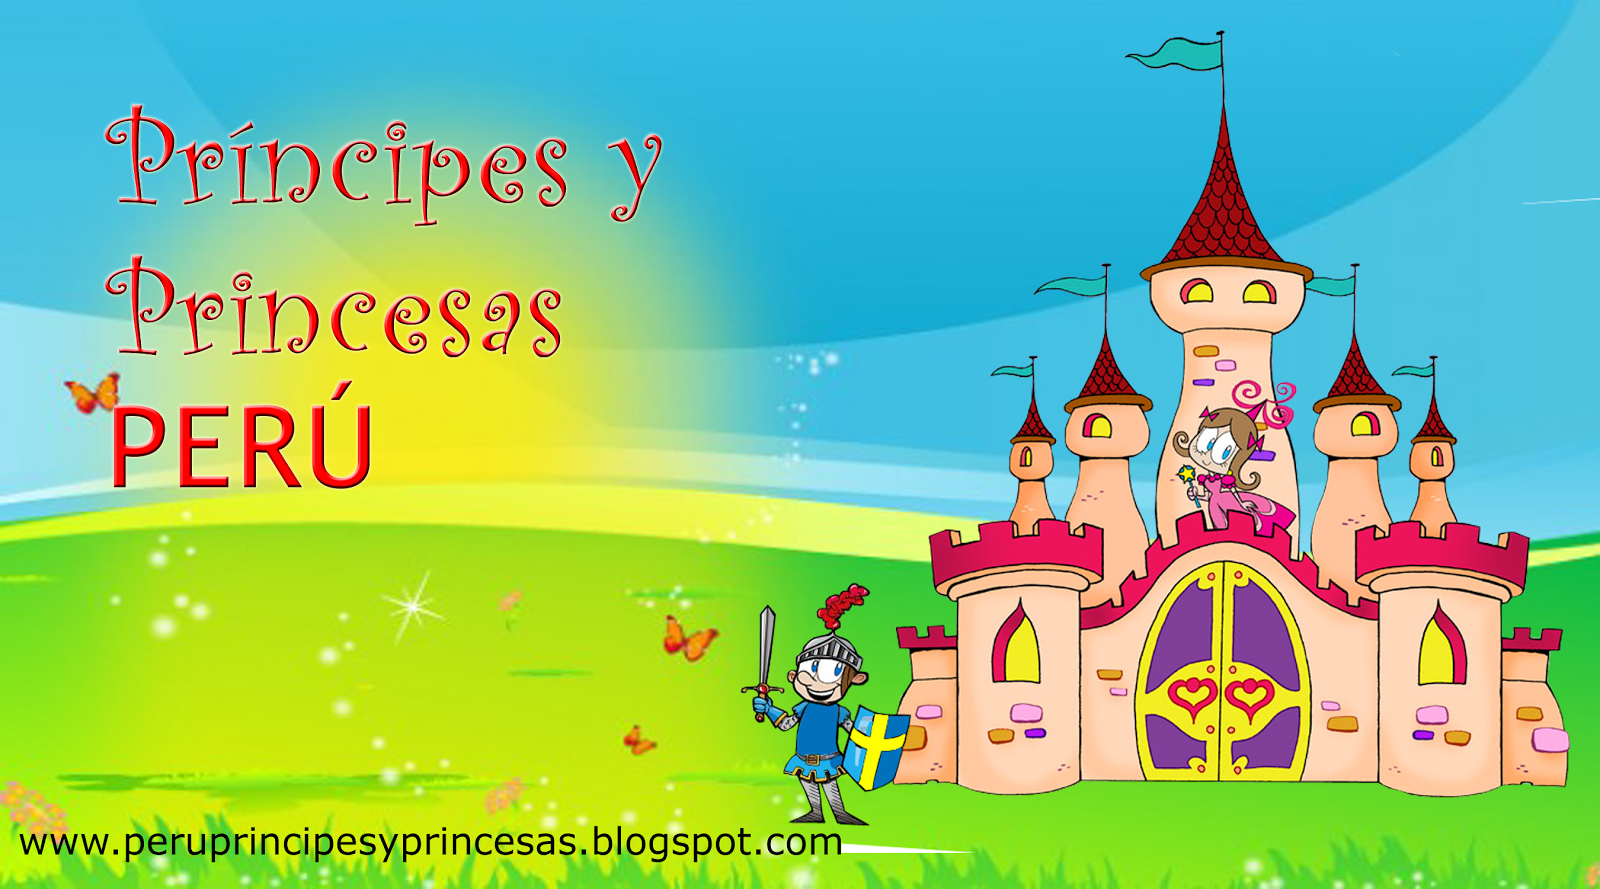 Principes y Princesas Perú